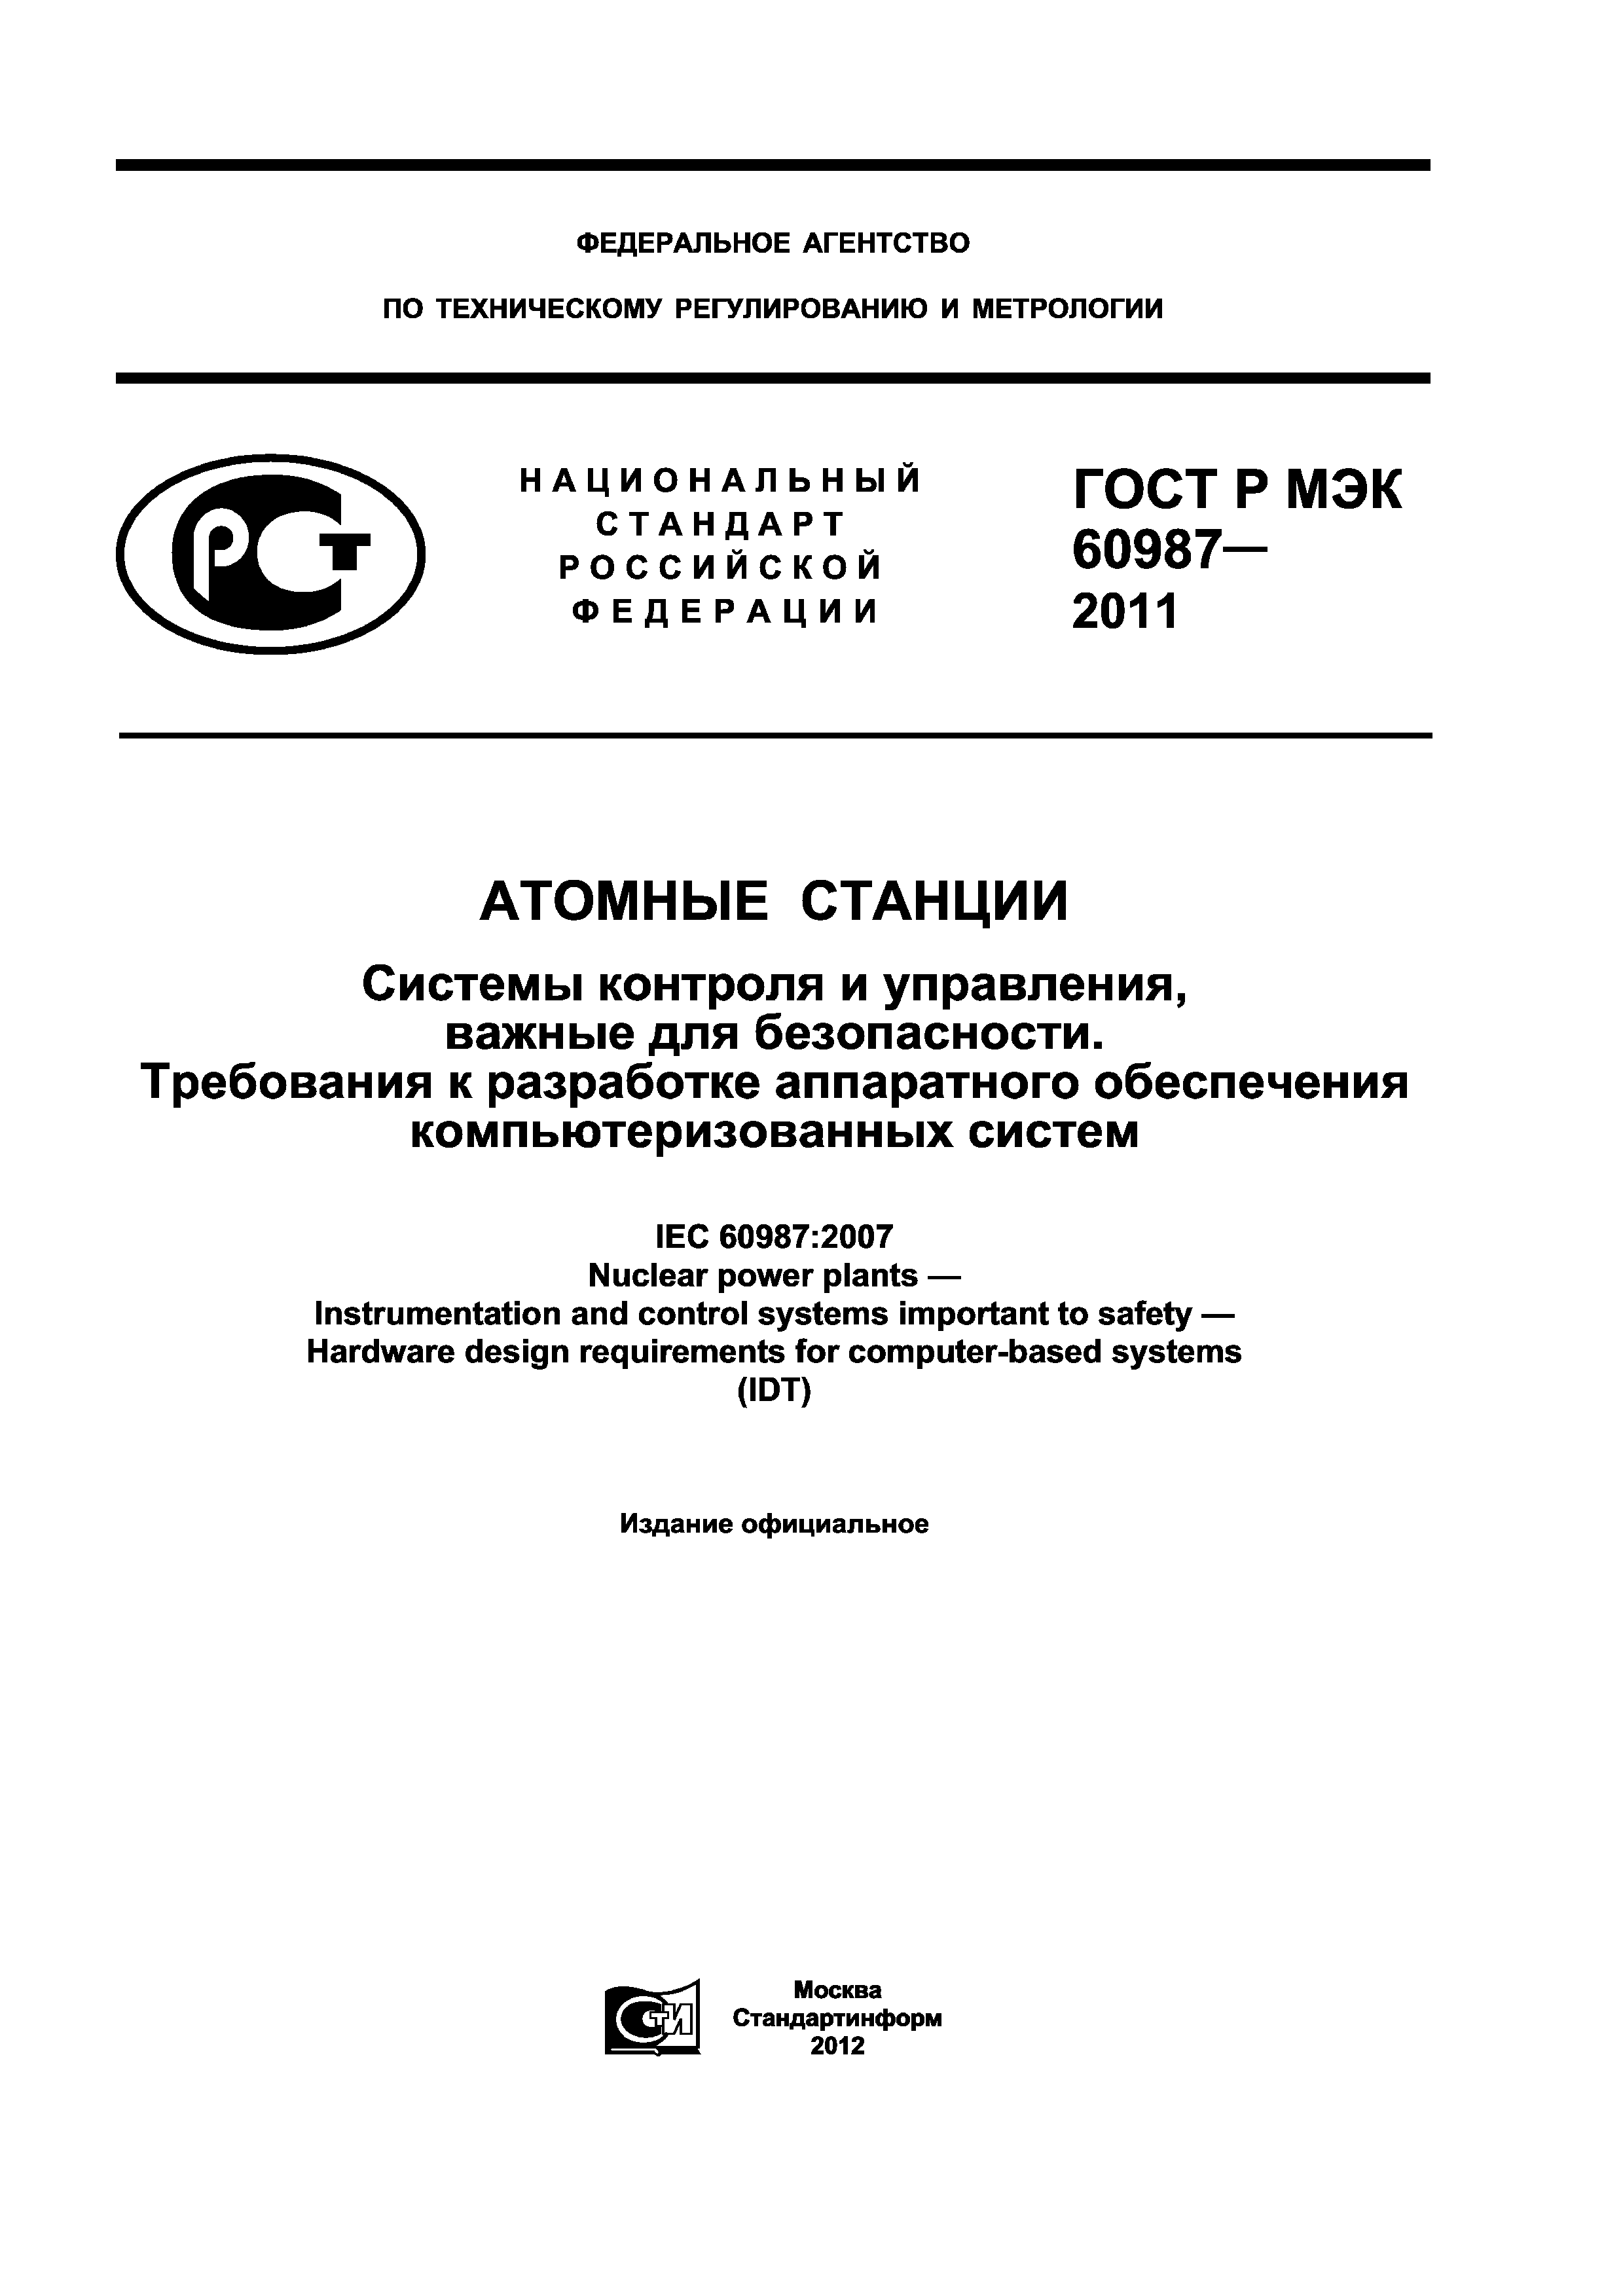 ГОСТ Р МЭК 60987-2011